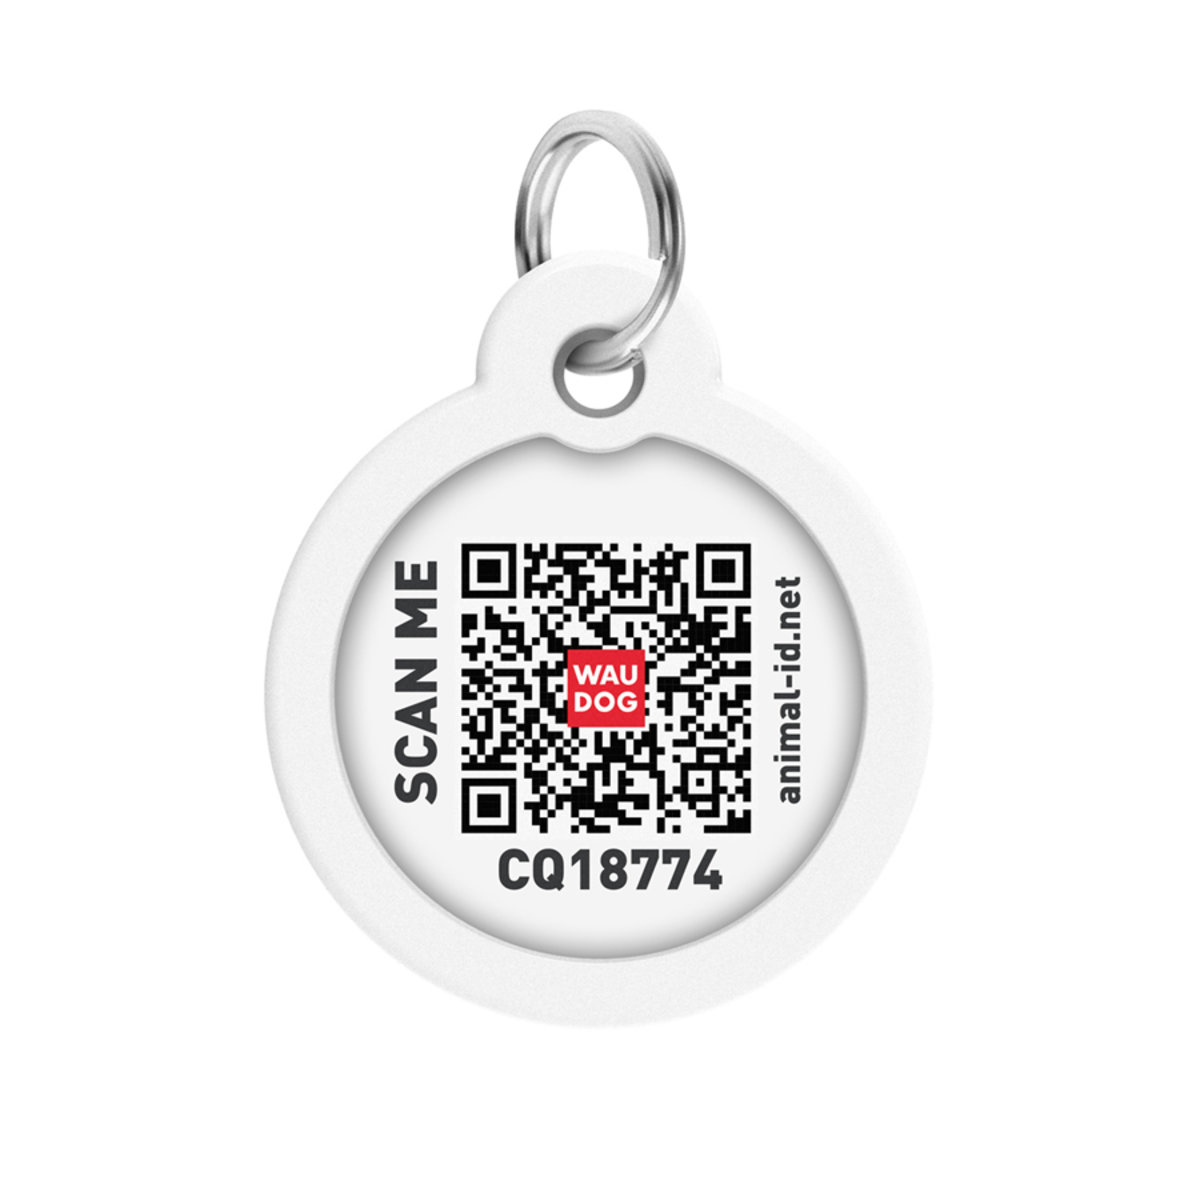 Адресник для собак и кошек Waudog Smart ID с QR паспортом, Утки, M, диаметр 30 мм - фото 3